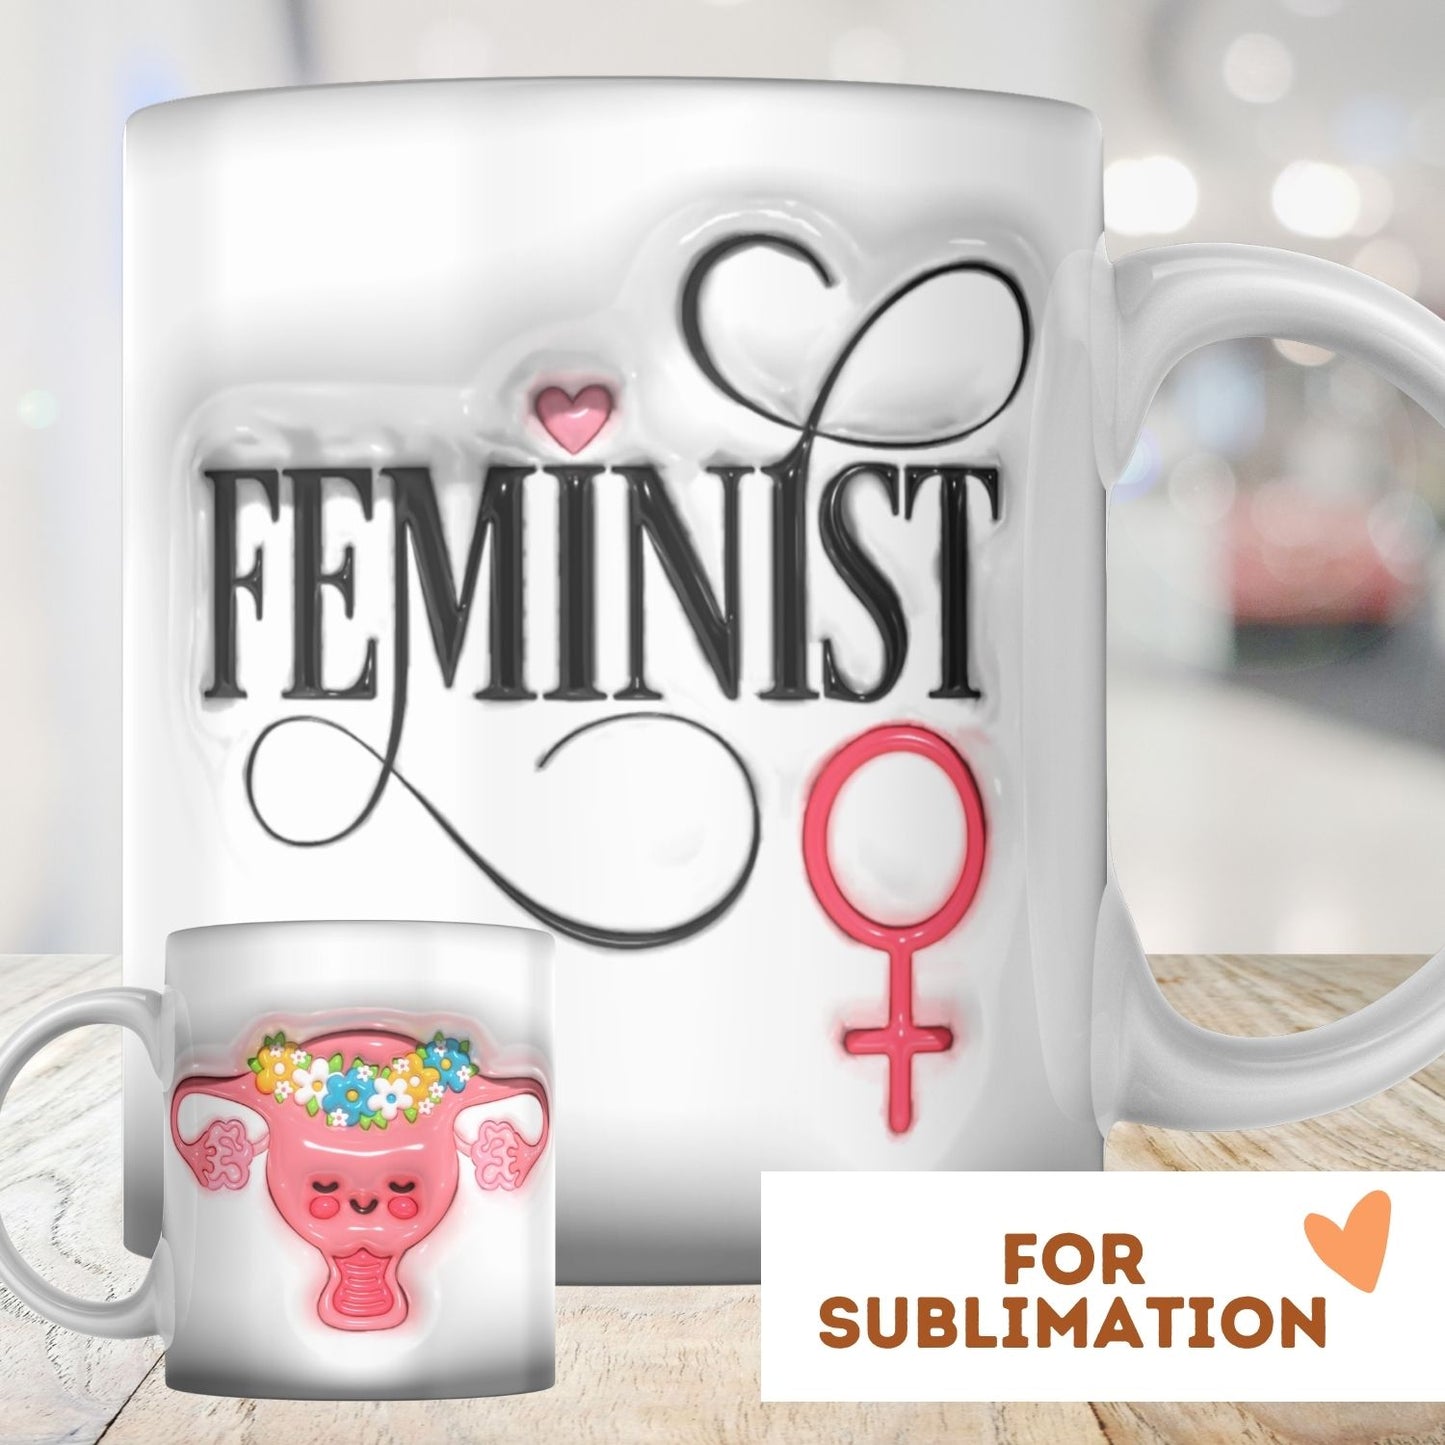 Feminist Uterus - 3D